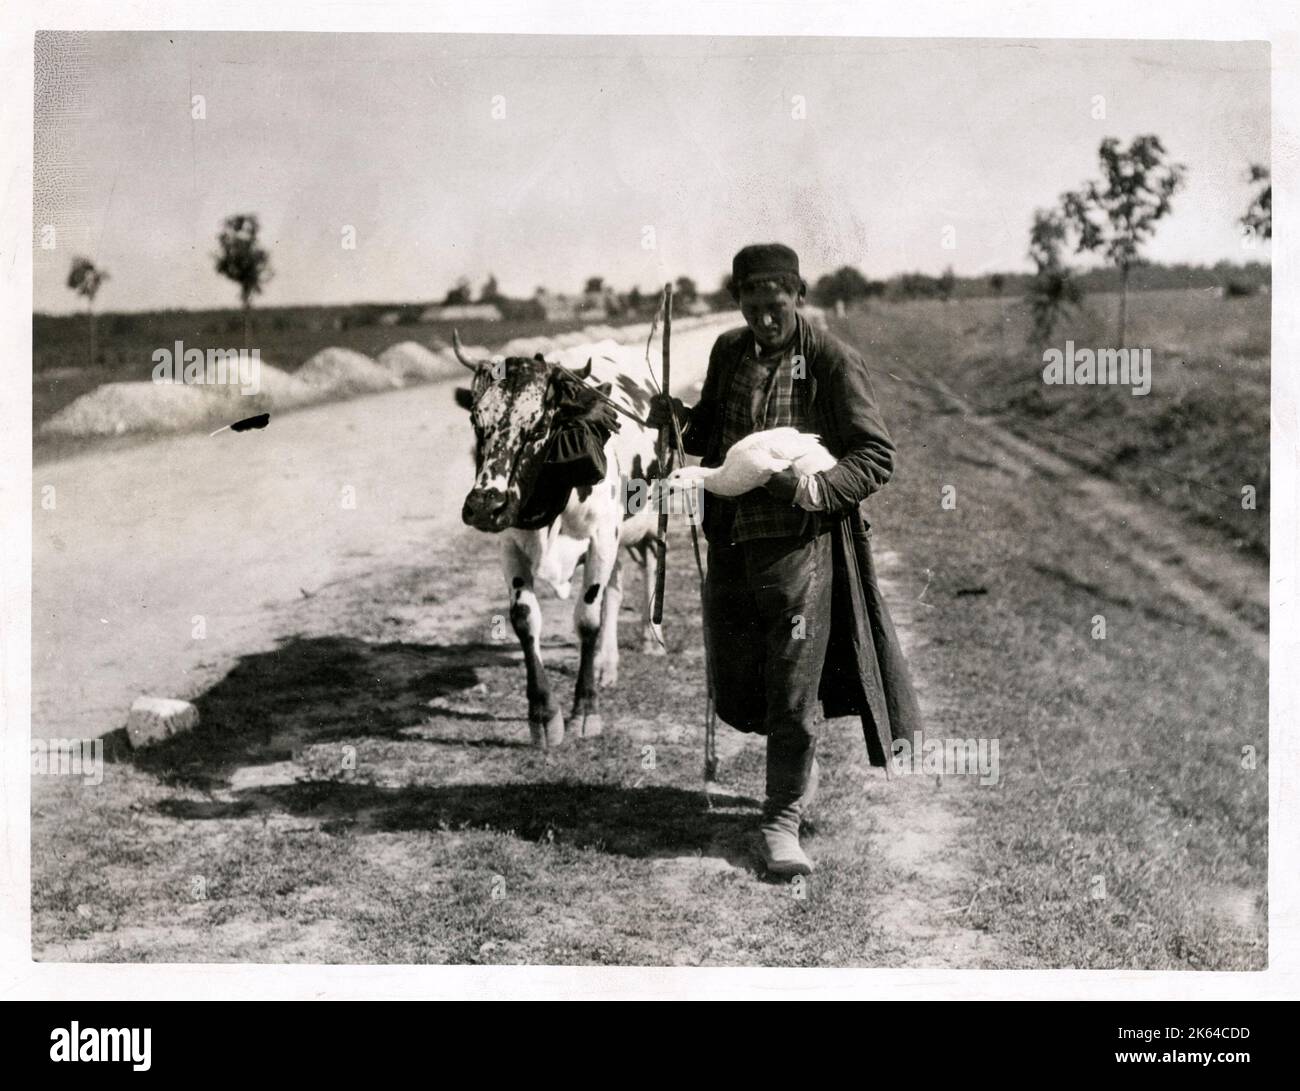 Polnischen Flüchtling flieht mit seinen Besitz - eine Kuh und ein Gans - vor der Deutschen in Polen während des Zweiten Weltkriegs. Stockfoto